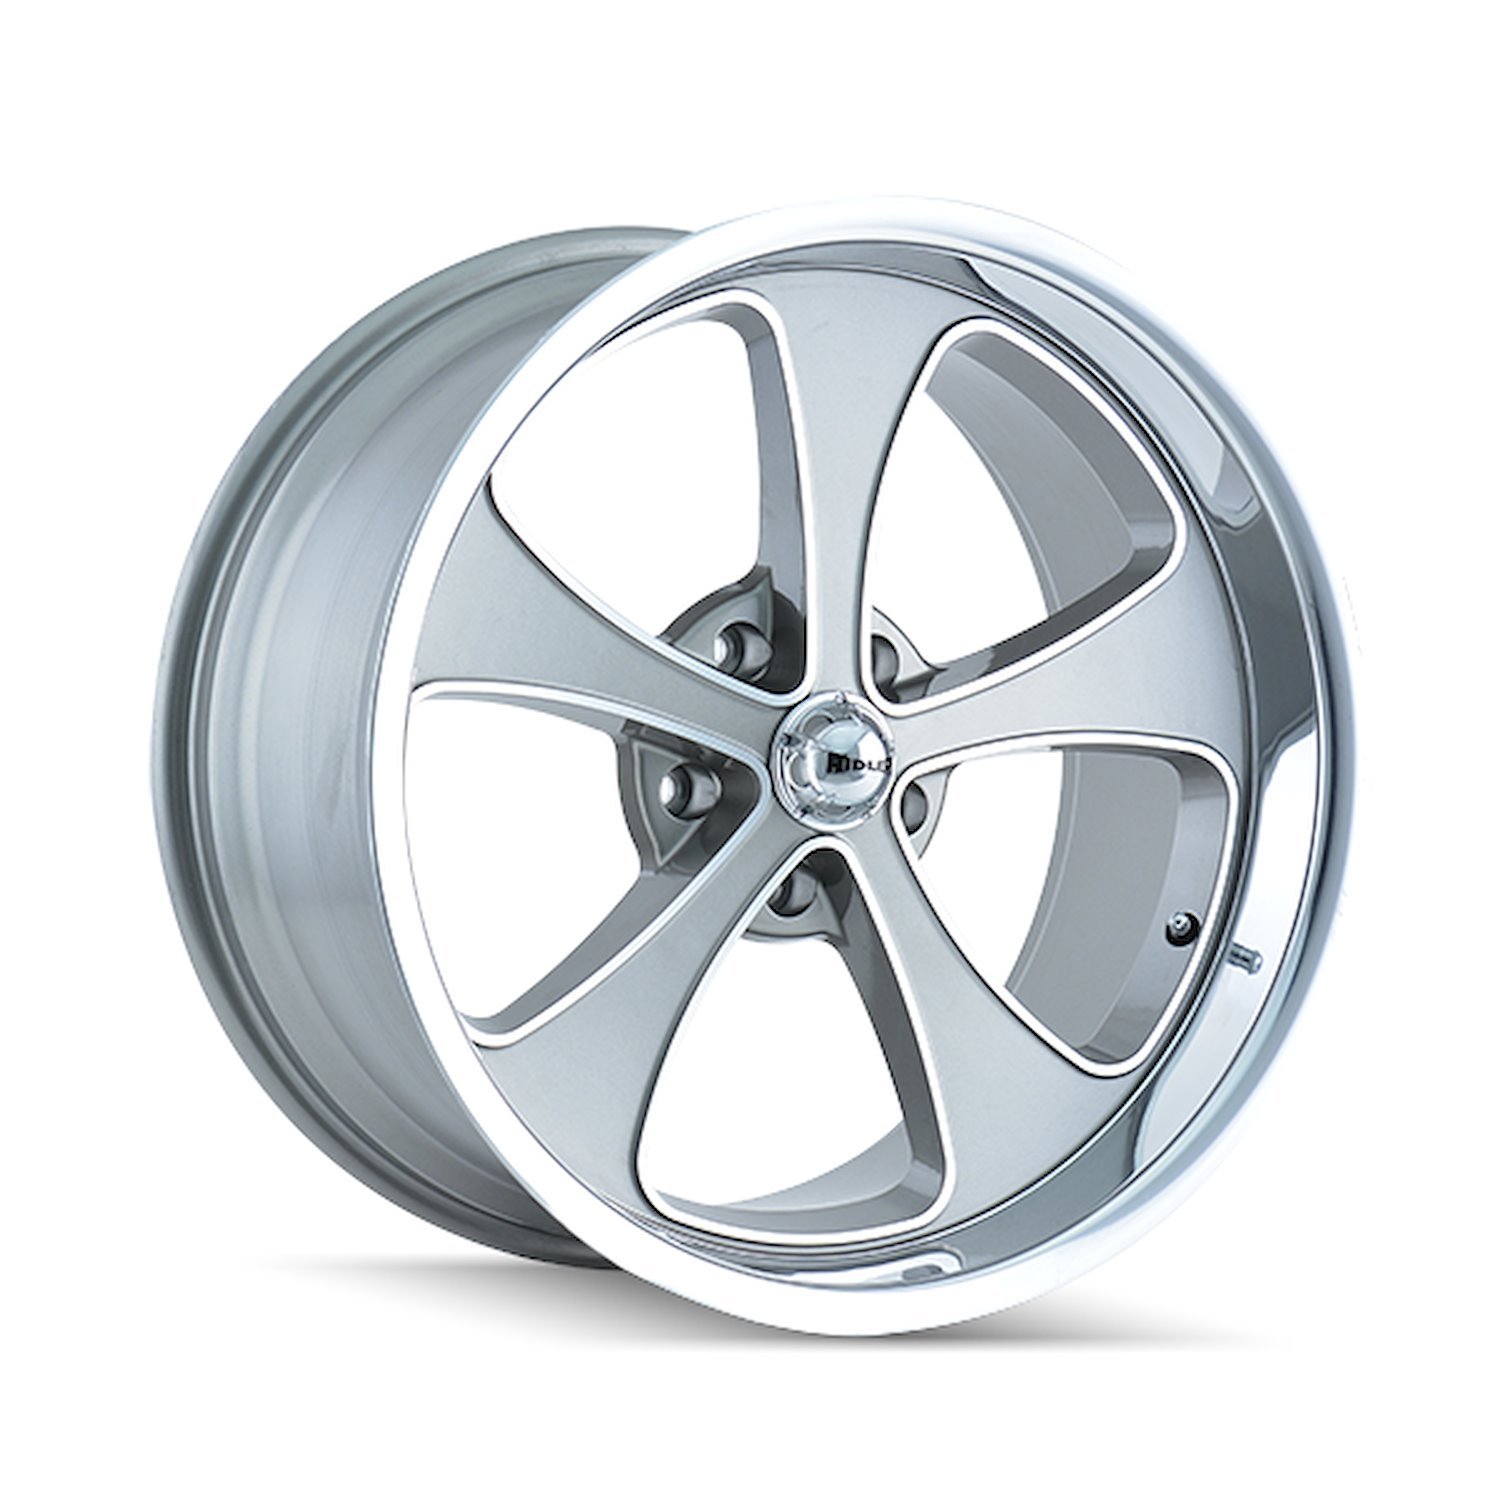 645-7865GP 645-Series Wheel [Size: 17" x 8"] Gloss Grey Machined/Polished Finish